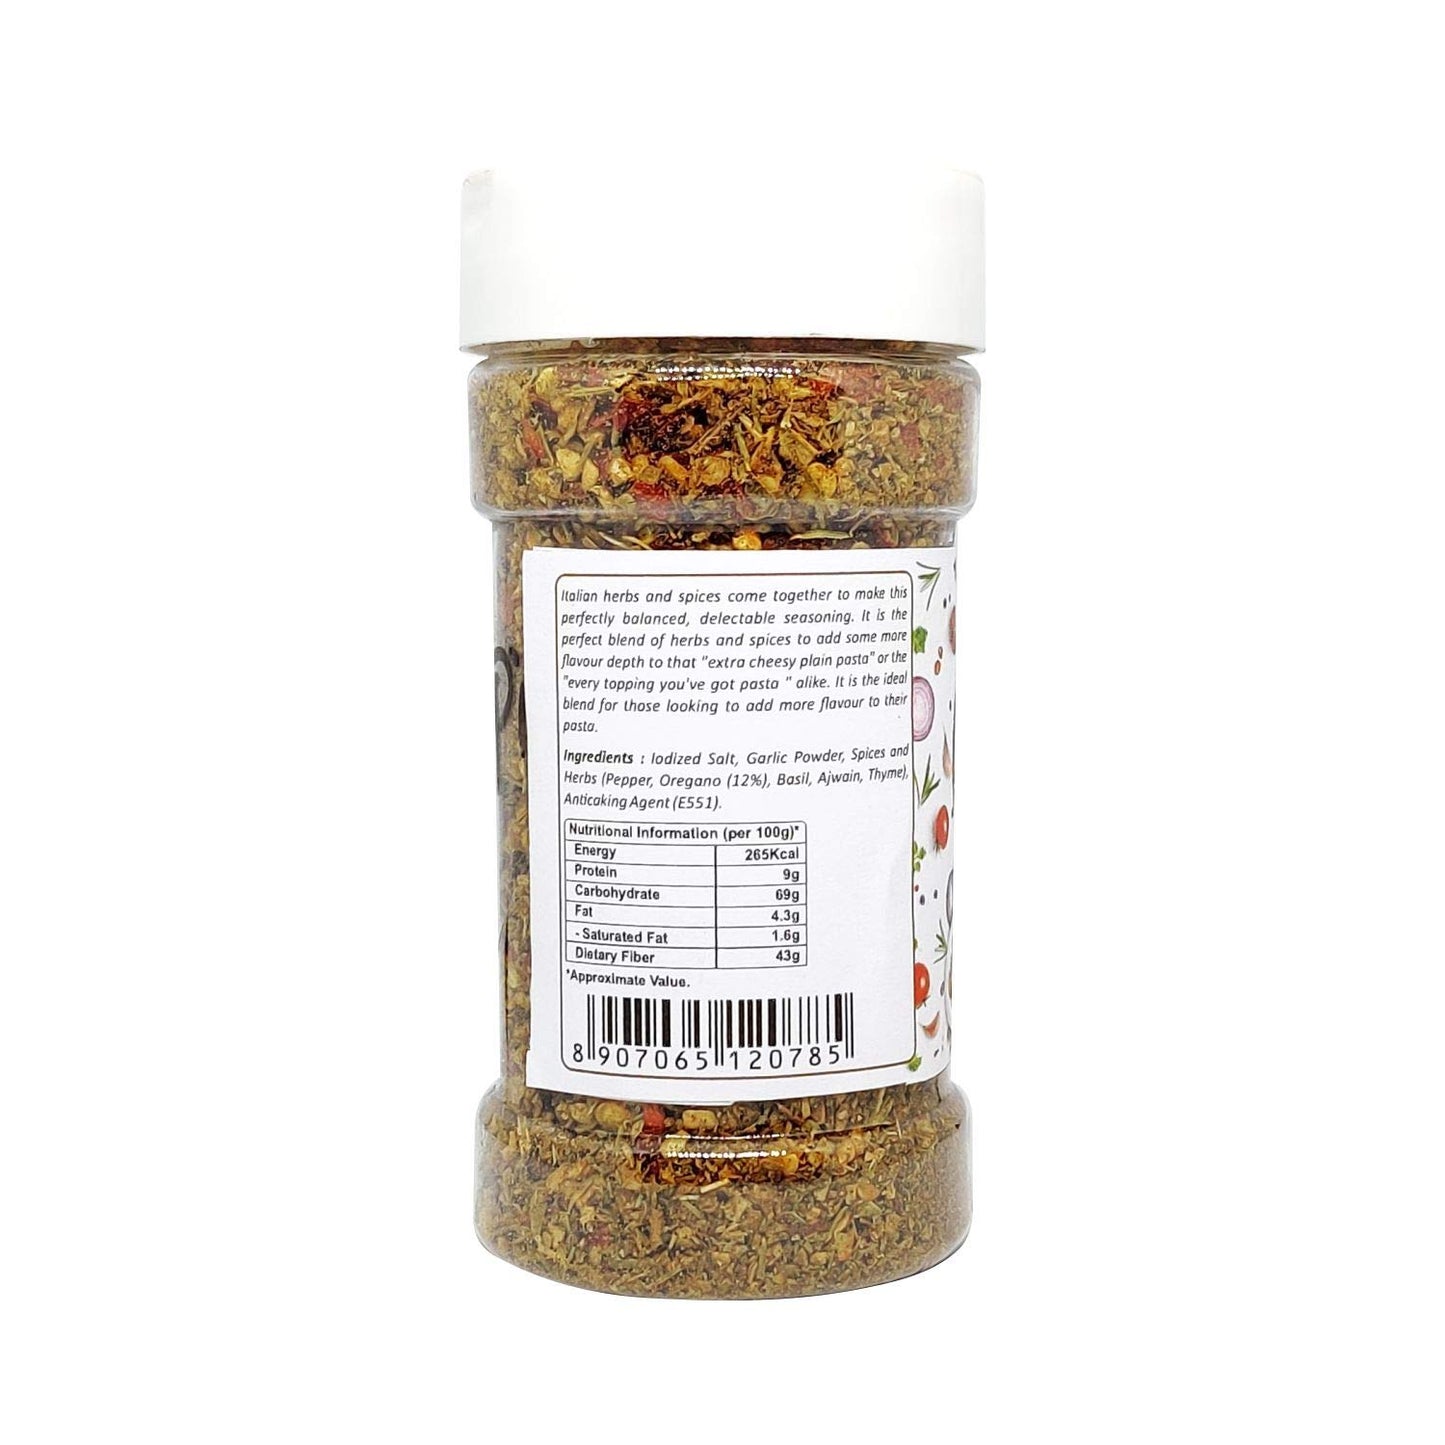 Puramio Combo Pack of Chilli Flakes, 70g + Pasta Seasoning, 100g [100% Natural]